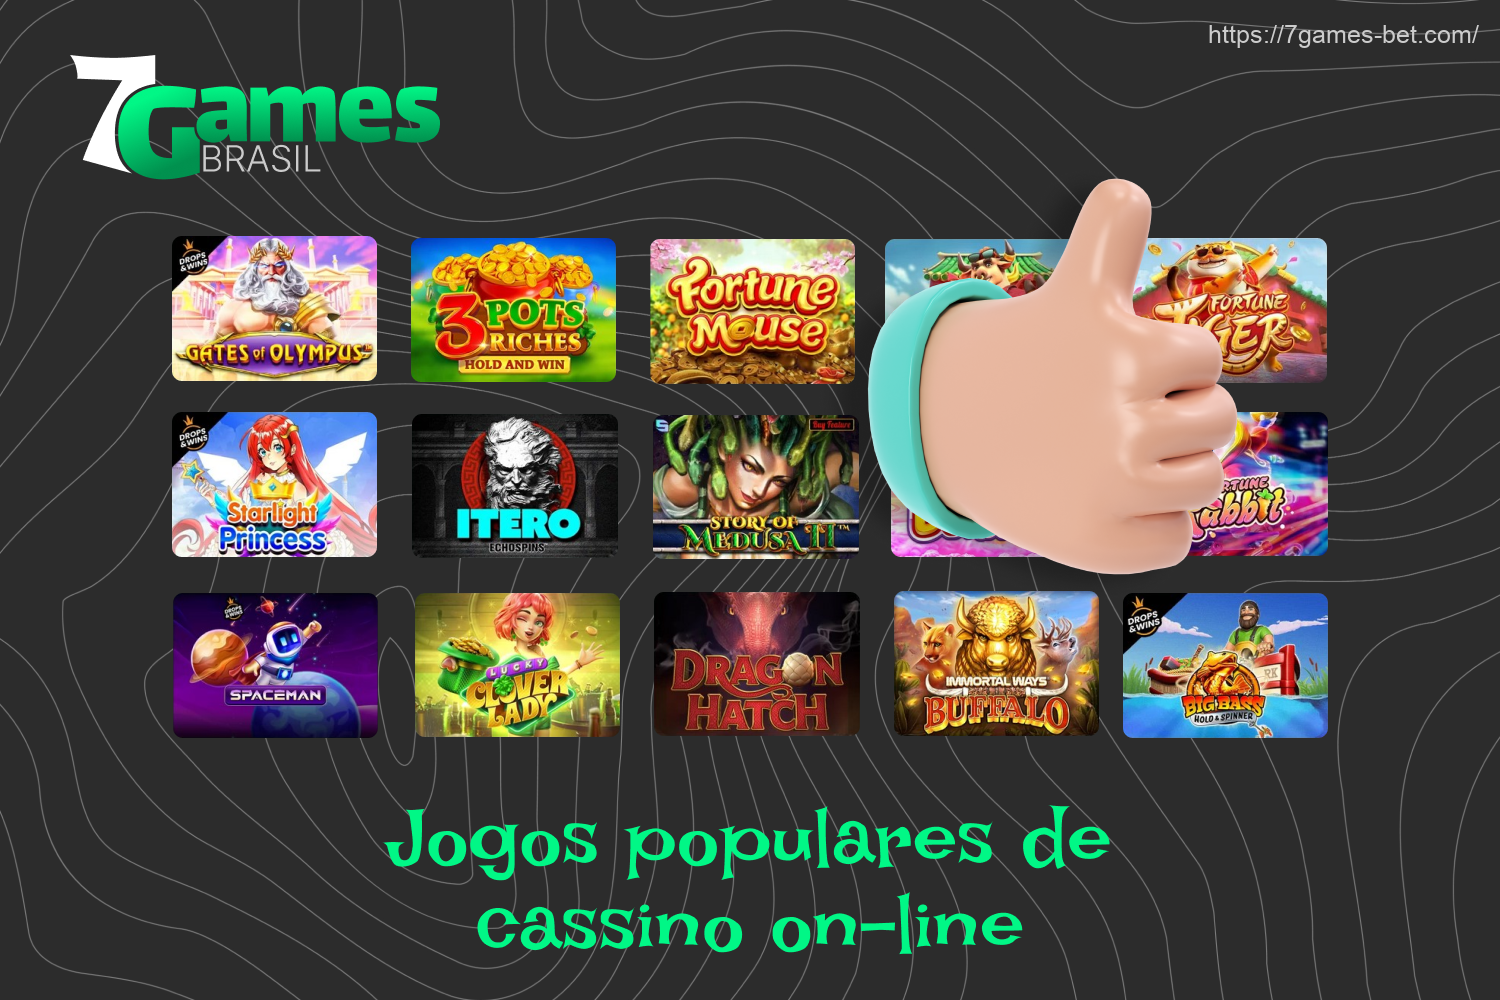 Há milhares de jogos diferentes disponíveis no cassino on-line 7Games, e todos eles estão disponíveis para jogar por meio do app móvel